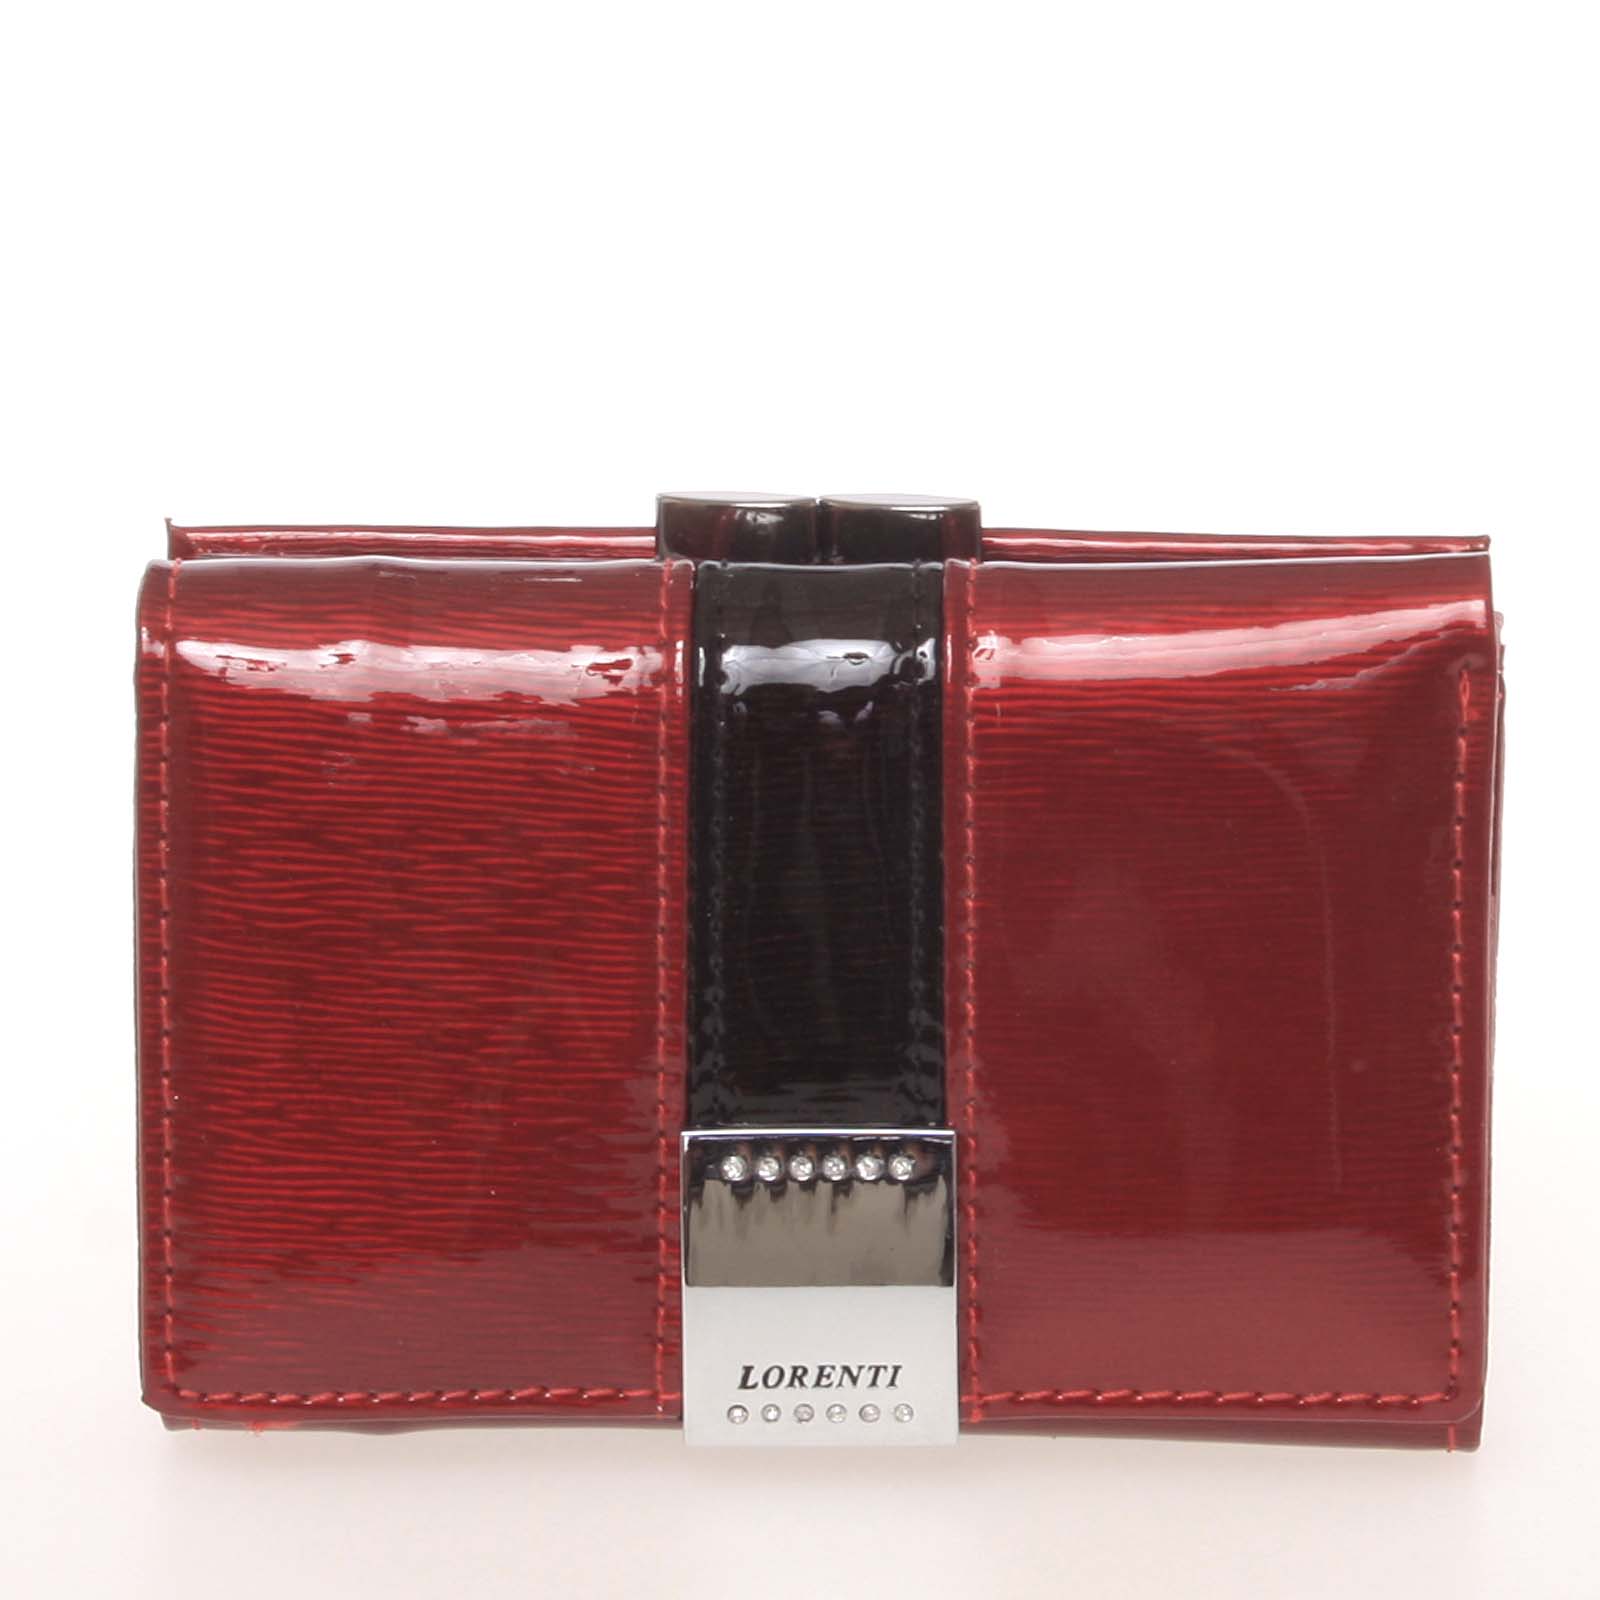 Luxusní lakovaná červená dámská peněženka - Lorenti 1170